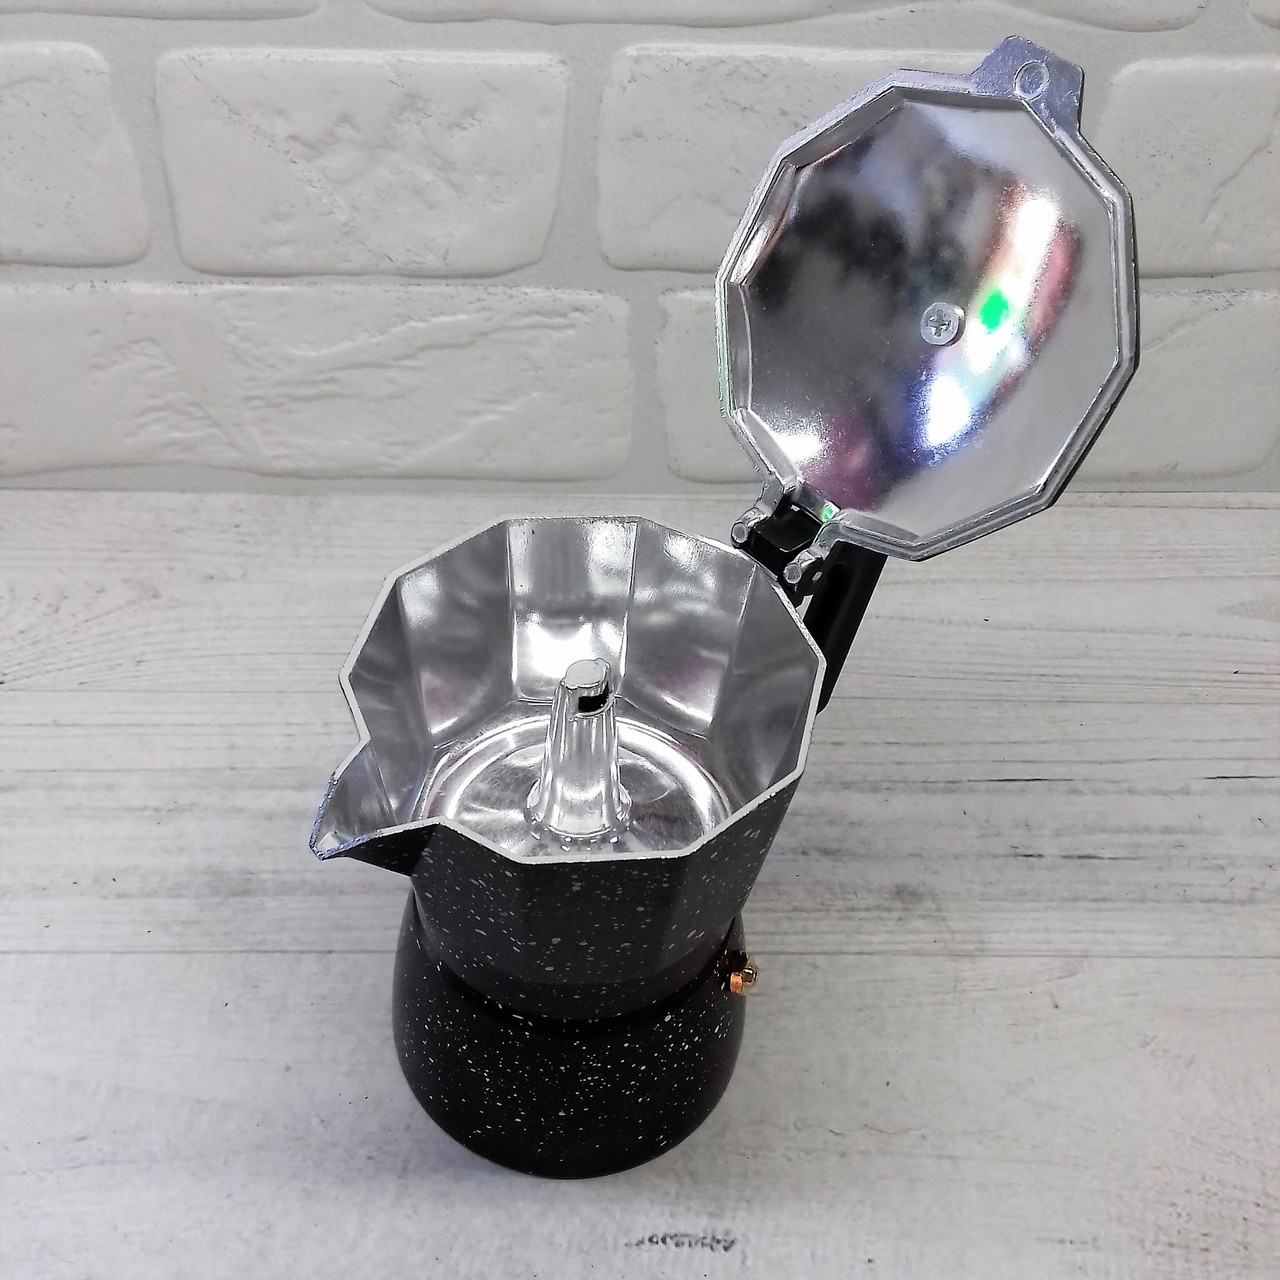 Кофеварка гейзерная алюминиевая 6 чашек мраморное покрытие Edenberg EB - 3785 ✅ базовая цена $8.06 ✔ Опт ✔ Скидки ✔ Заходите! - Интернет-магазин ✅ Фортуна-опт ✅